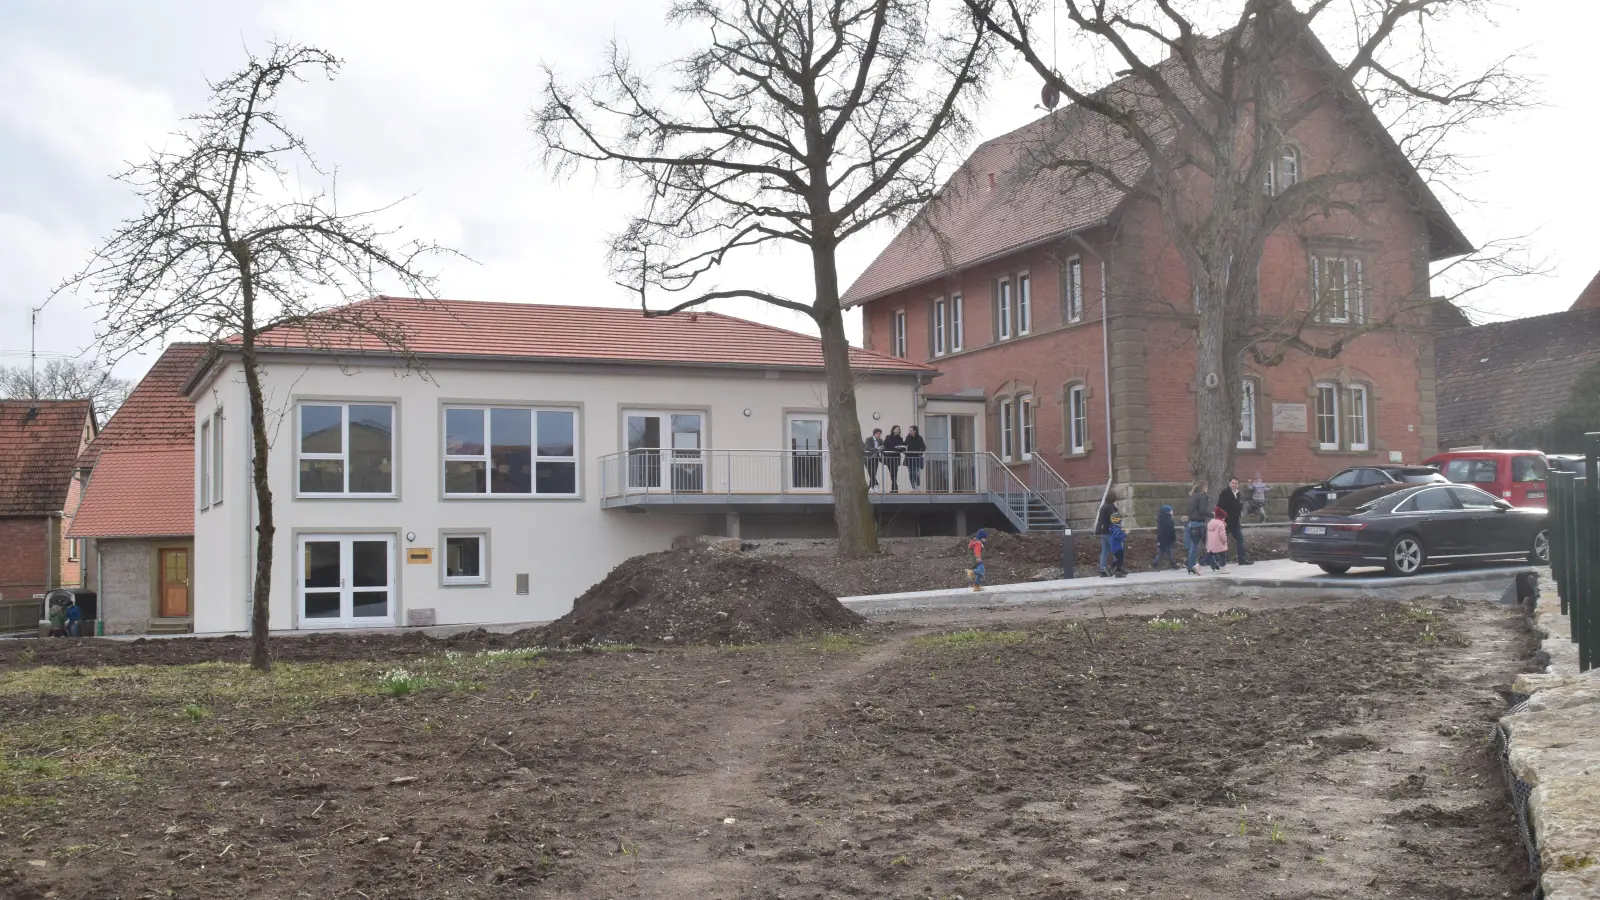 Inzwischen ist das Dorfgemeinschaftshaus in Herrnberchtheim mit Leben gefüllt. Im vergangenen März, als das Foto entstand, waren die Außenanlagen noch nicht fertig. (Archivbild: Gerhard Krämer)